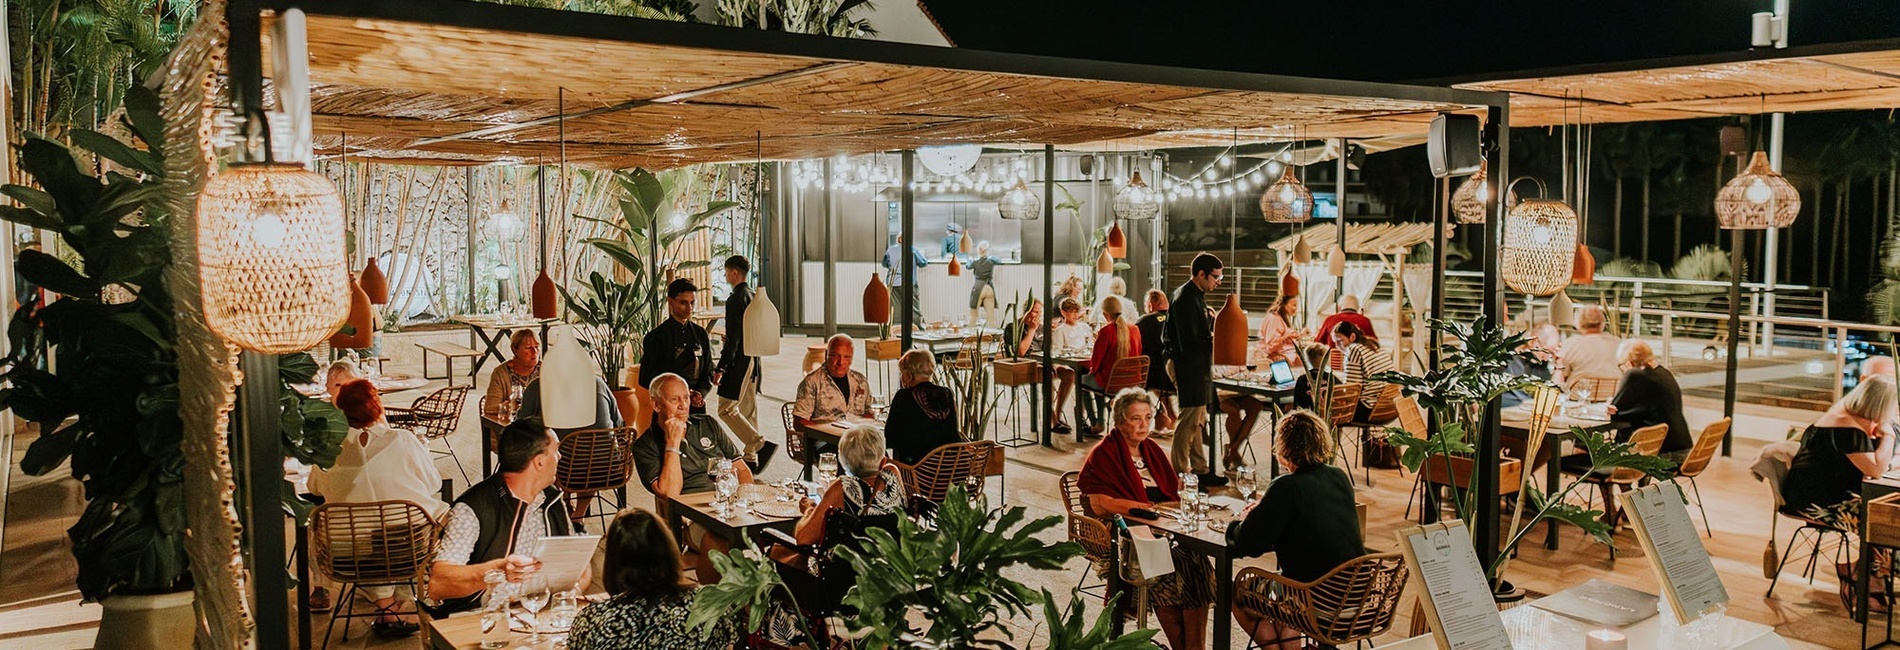 un grupo de personas están sentadas en mesas en un restaurante